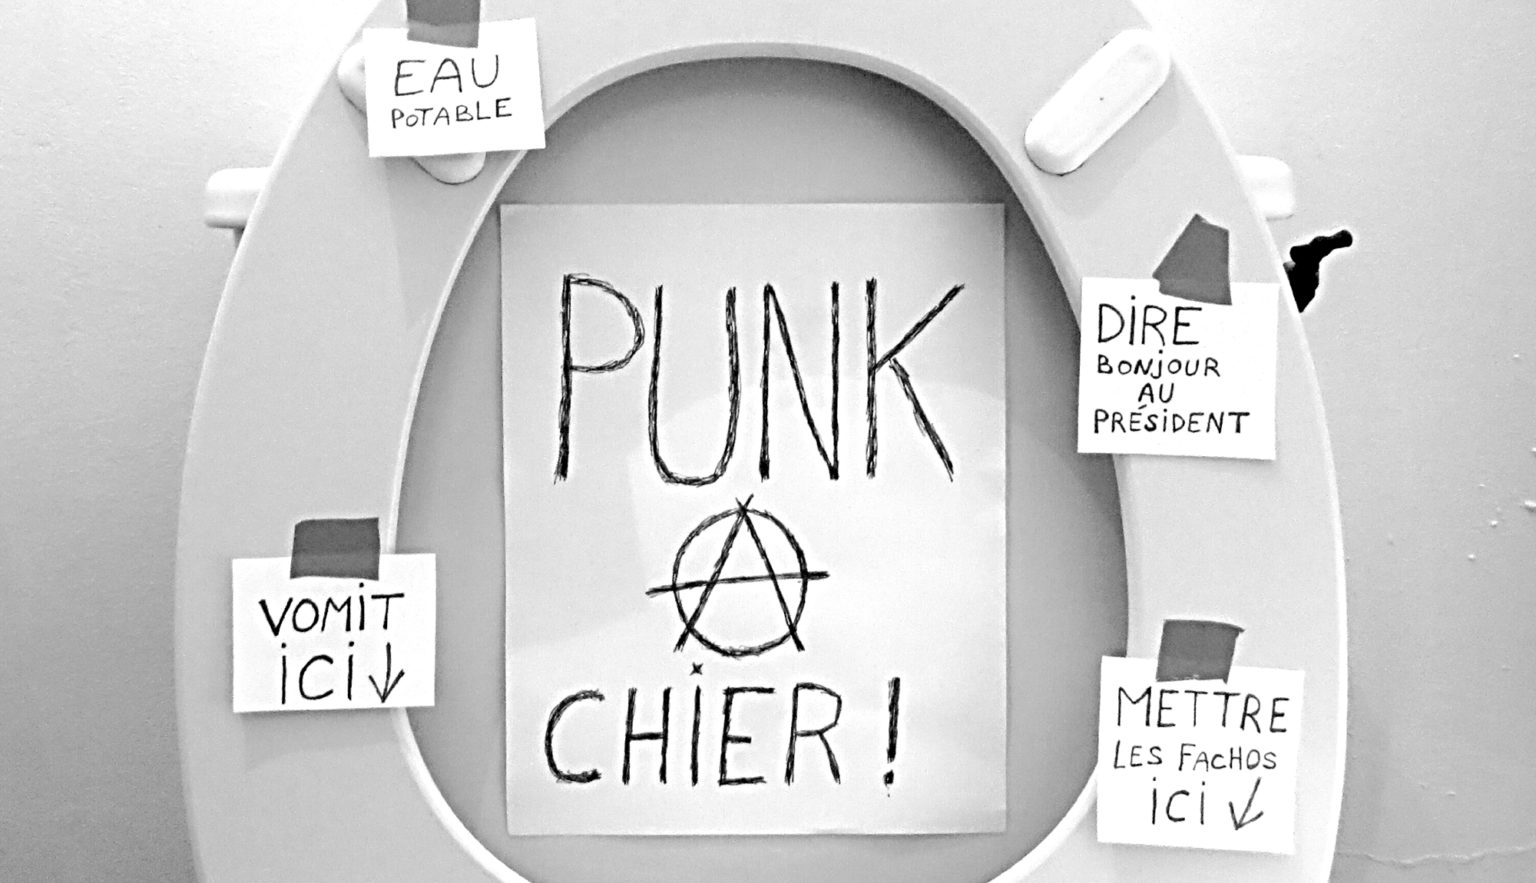 Punk_a_chier2